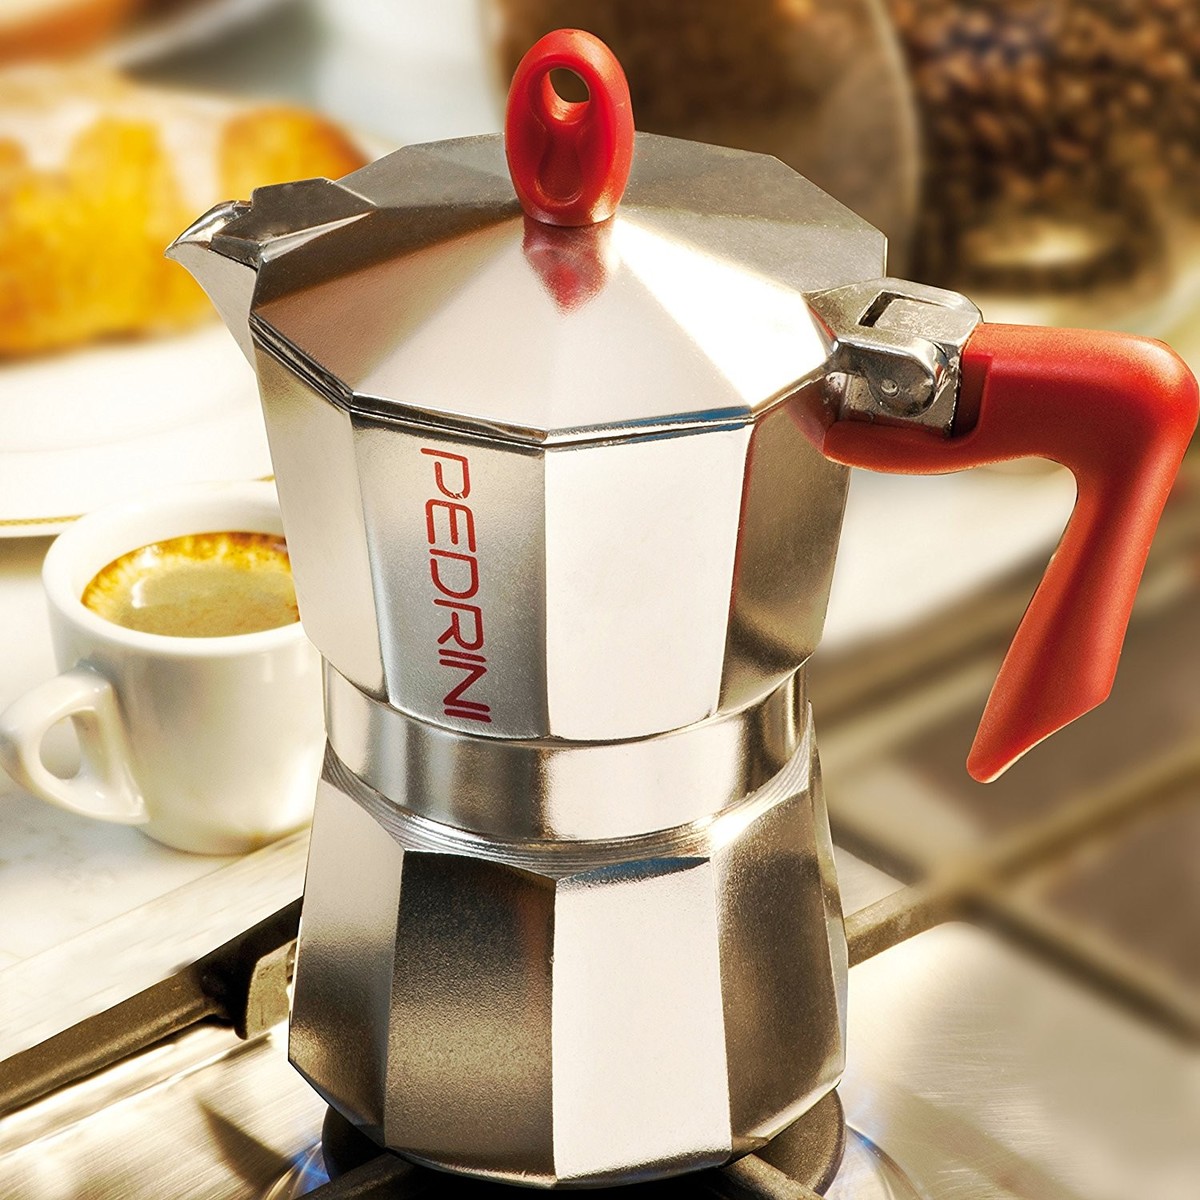 Pedrini Aluminium Coffee Maker 3cups Online at Best Price